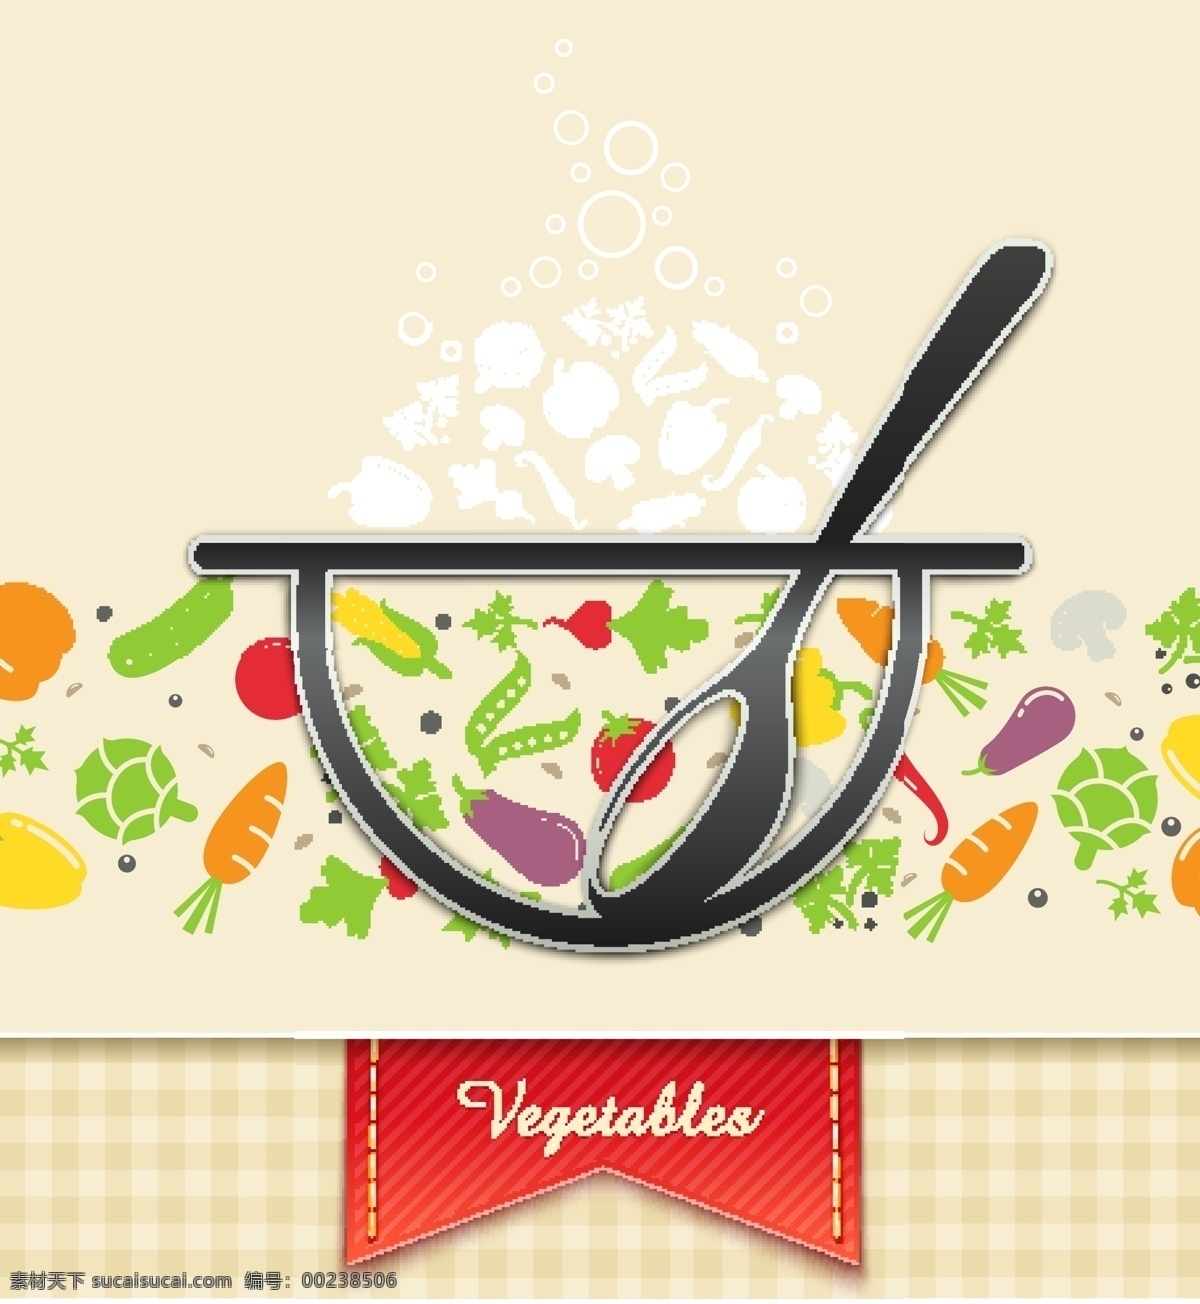 素雅 餐厅 主题 元素 背景 布纹 餐厅元素 淡雅 格子布 勺子 蔬菜 蔬果 抽象锅 矢量图